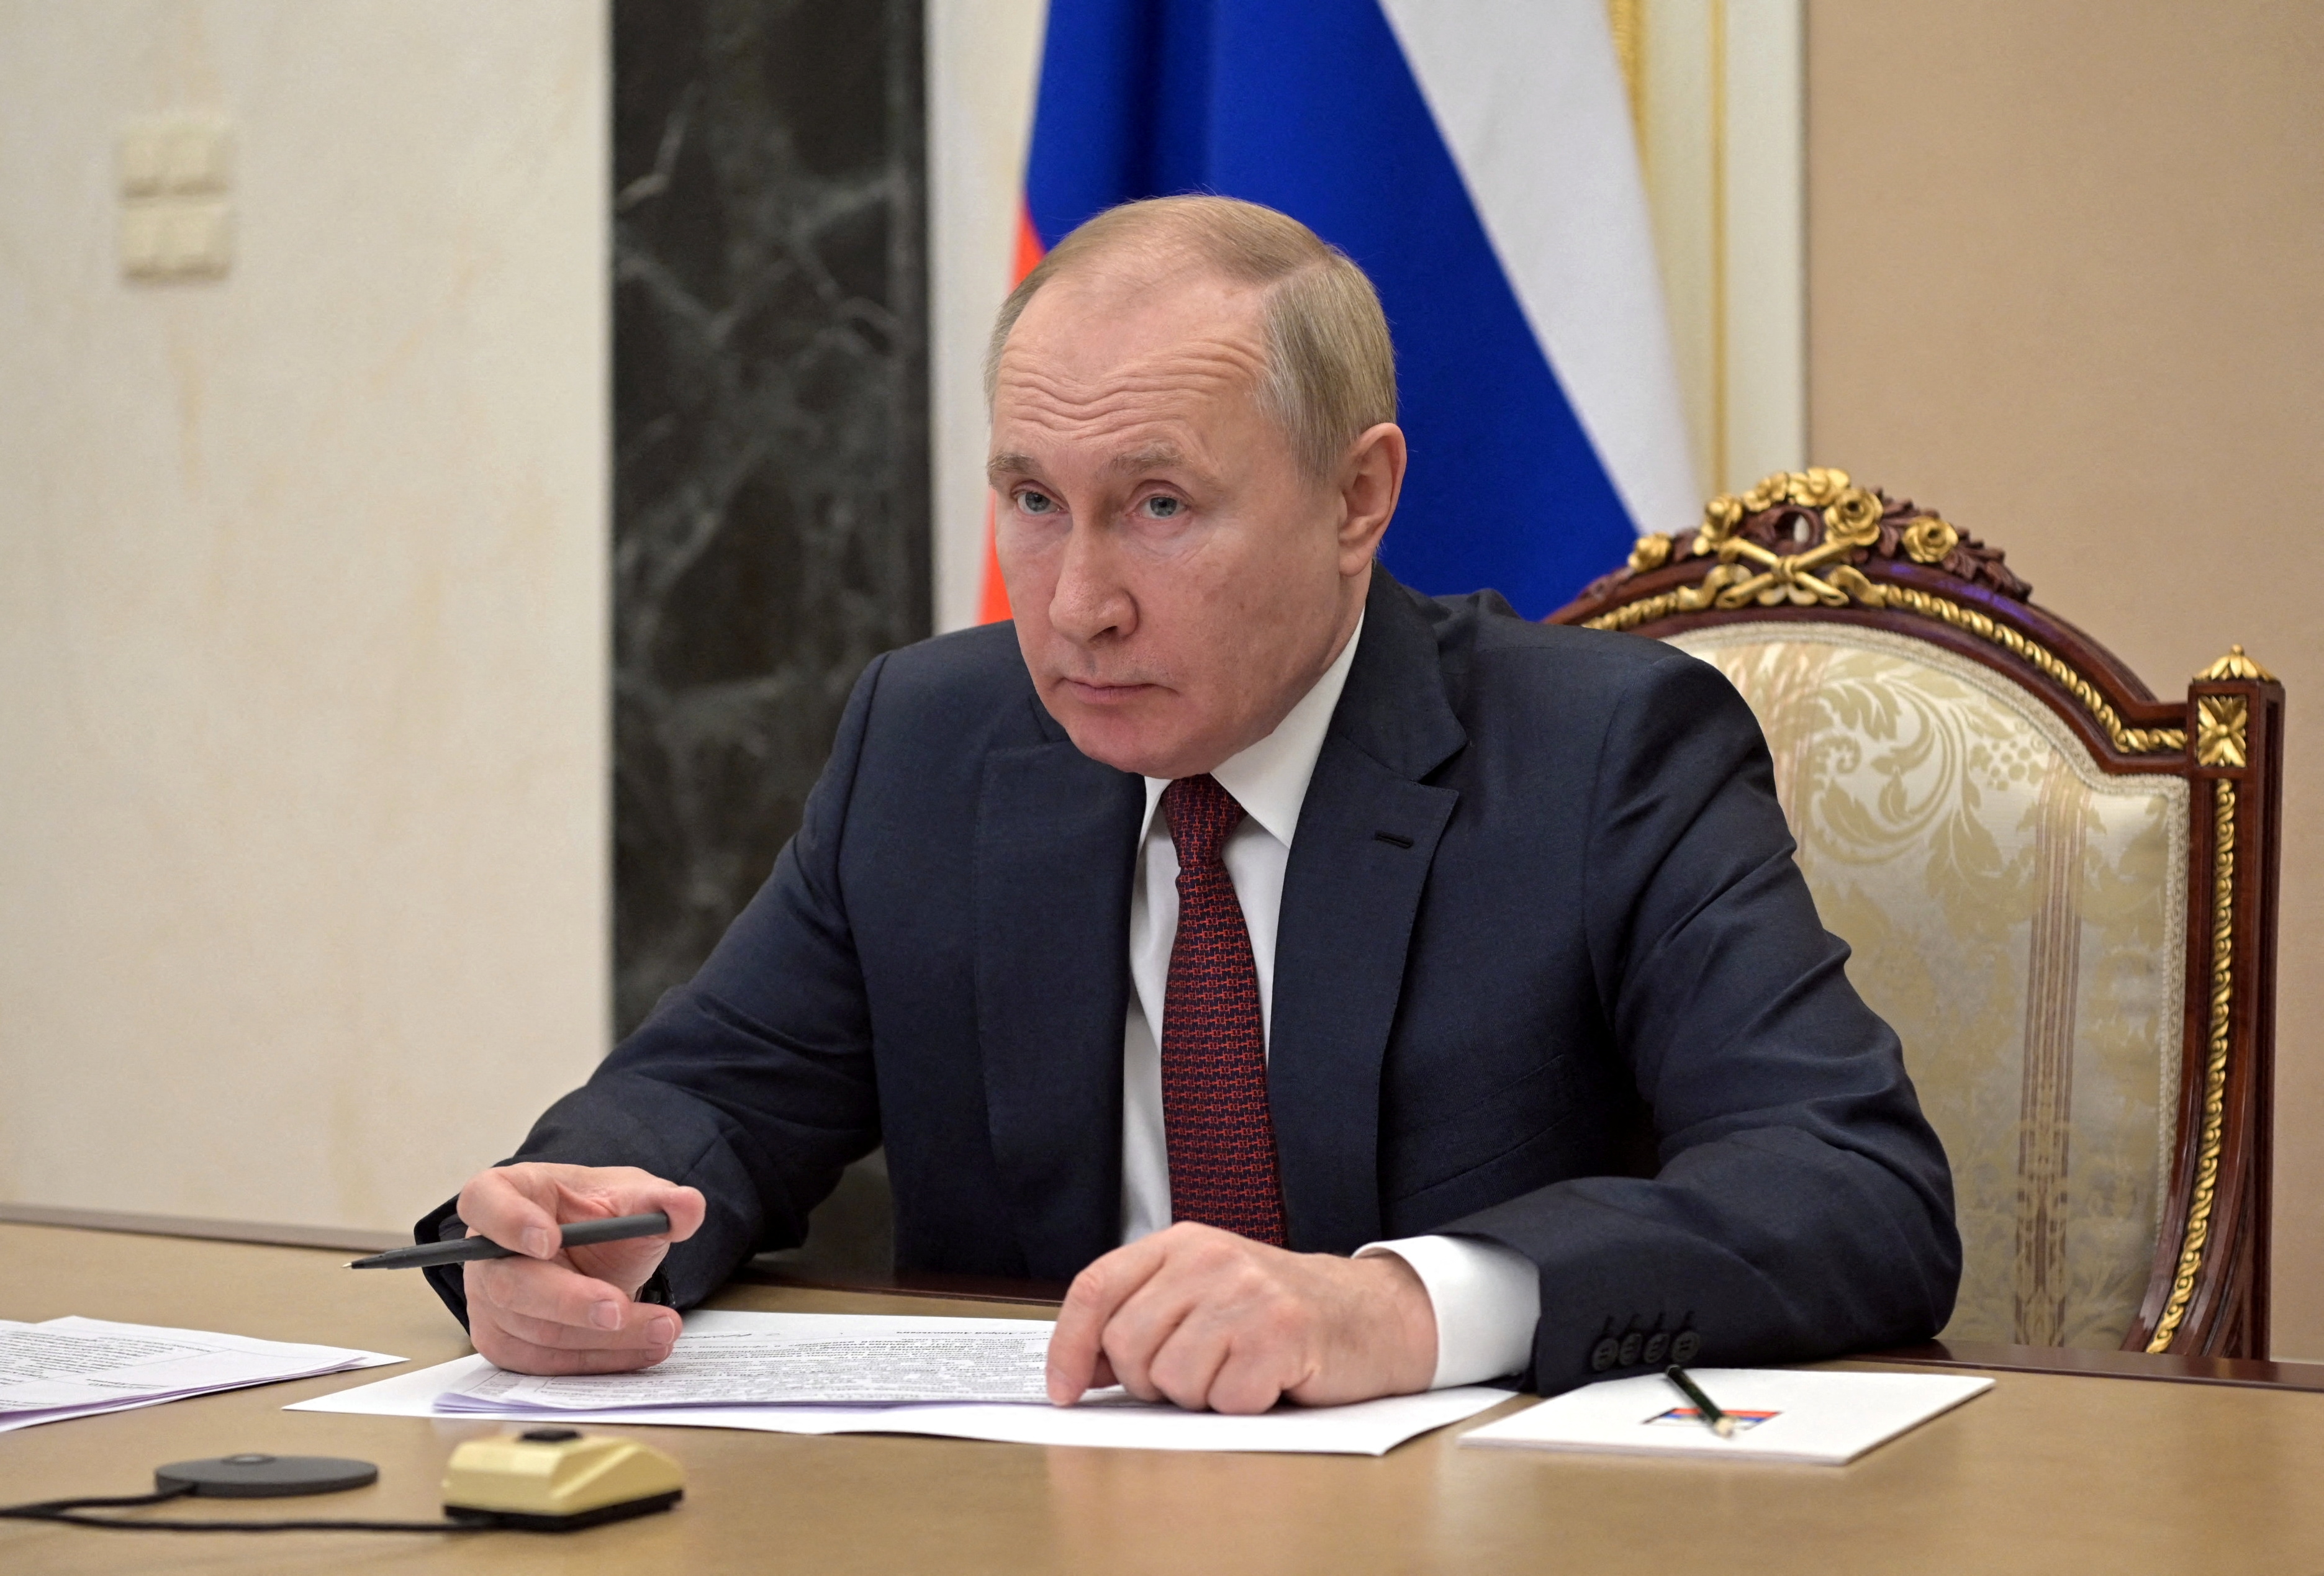 Krievijas prezidents Vladimirs Putins apmeklē tikšanos ar valdības locekļiem, izmantojot video saiti Maskavā, Krievijā 12. gada 2022. janvārī. Sputnik/Aleksejs Nikoļskis/Kremlis caur REUTERS